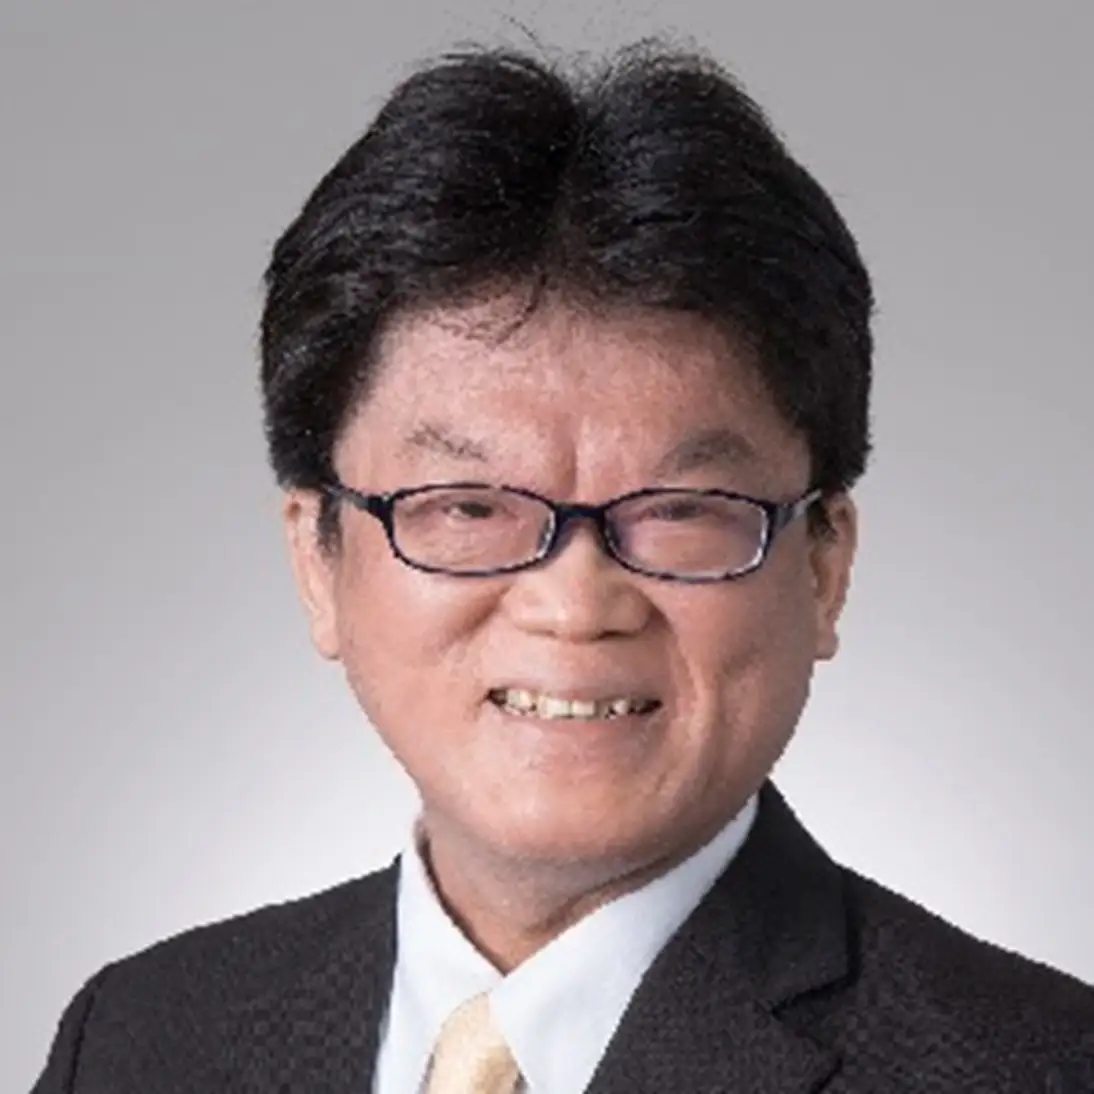 ネット用語「神降臨」の元祖で、xRエバンジェリストの山田達司氏がマジセミの顧問に就任。メタバースにおけるビジネスを加速